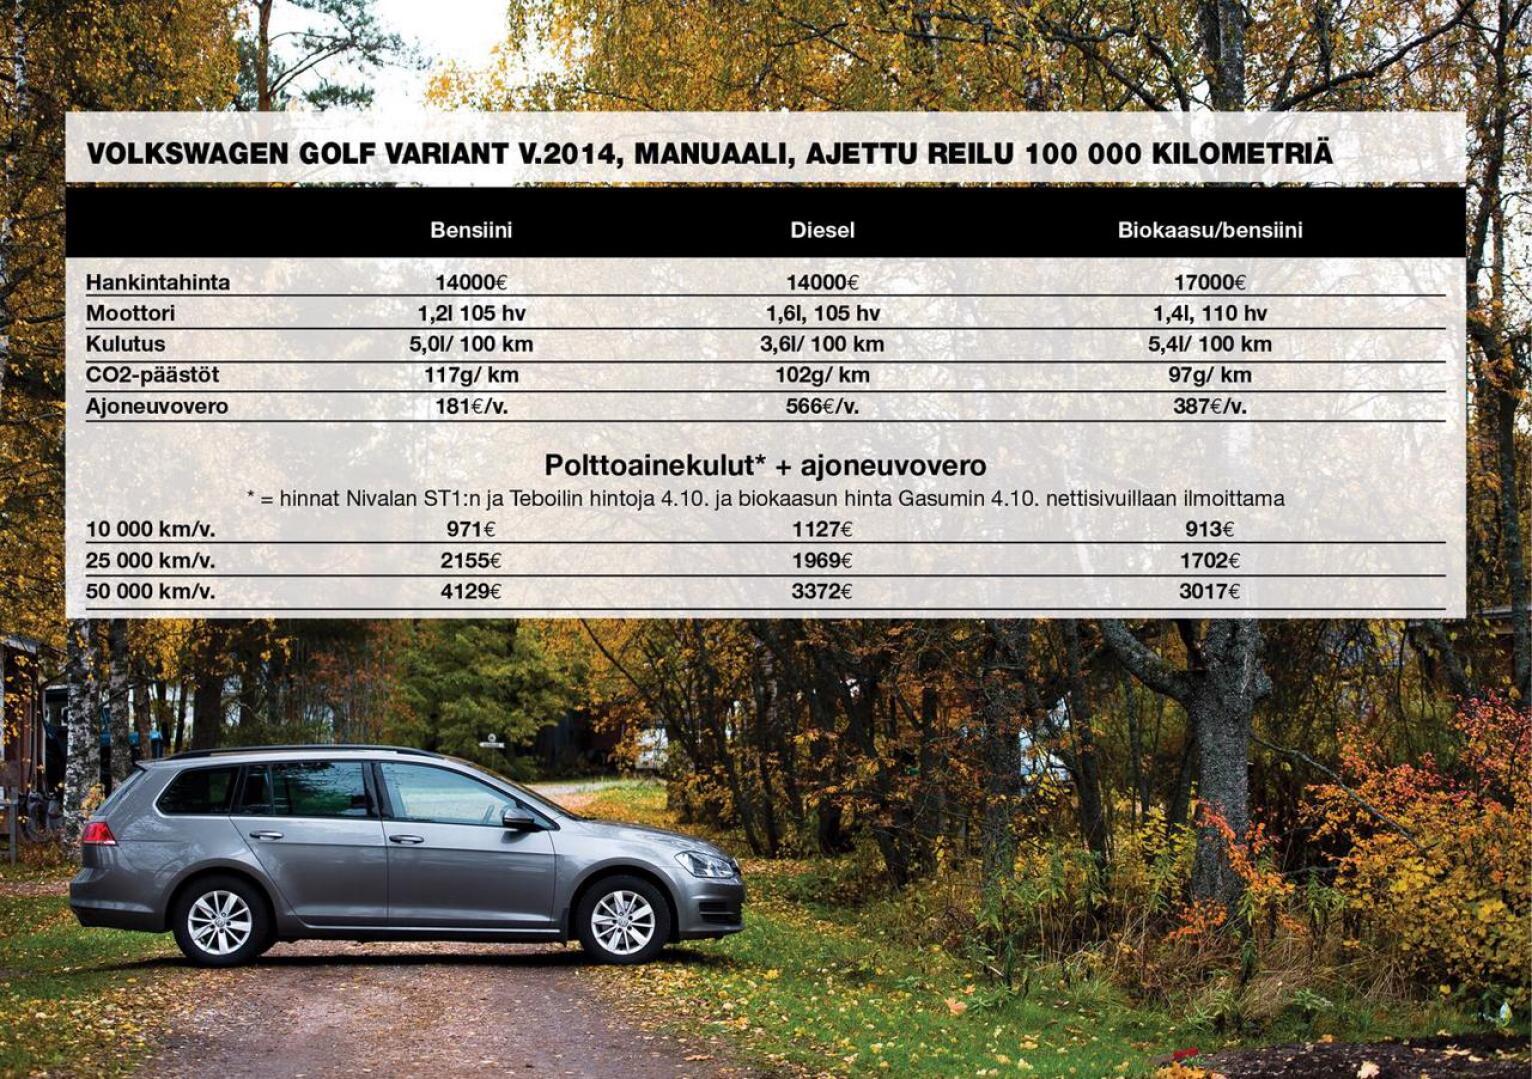 Bensiini-, diesel- ja biokaasukäyttöiset Volkswagen Golfit vertailussa. Tiedot kulutuksesta, päästöistä ja ajoneuvoverosta ovat peräisin Nettiauto.com -sivuston myynti-ilmoituksista.